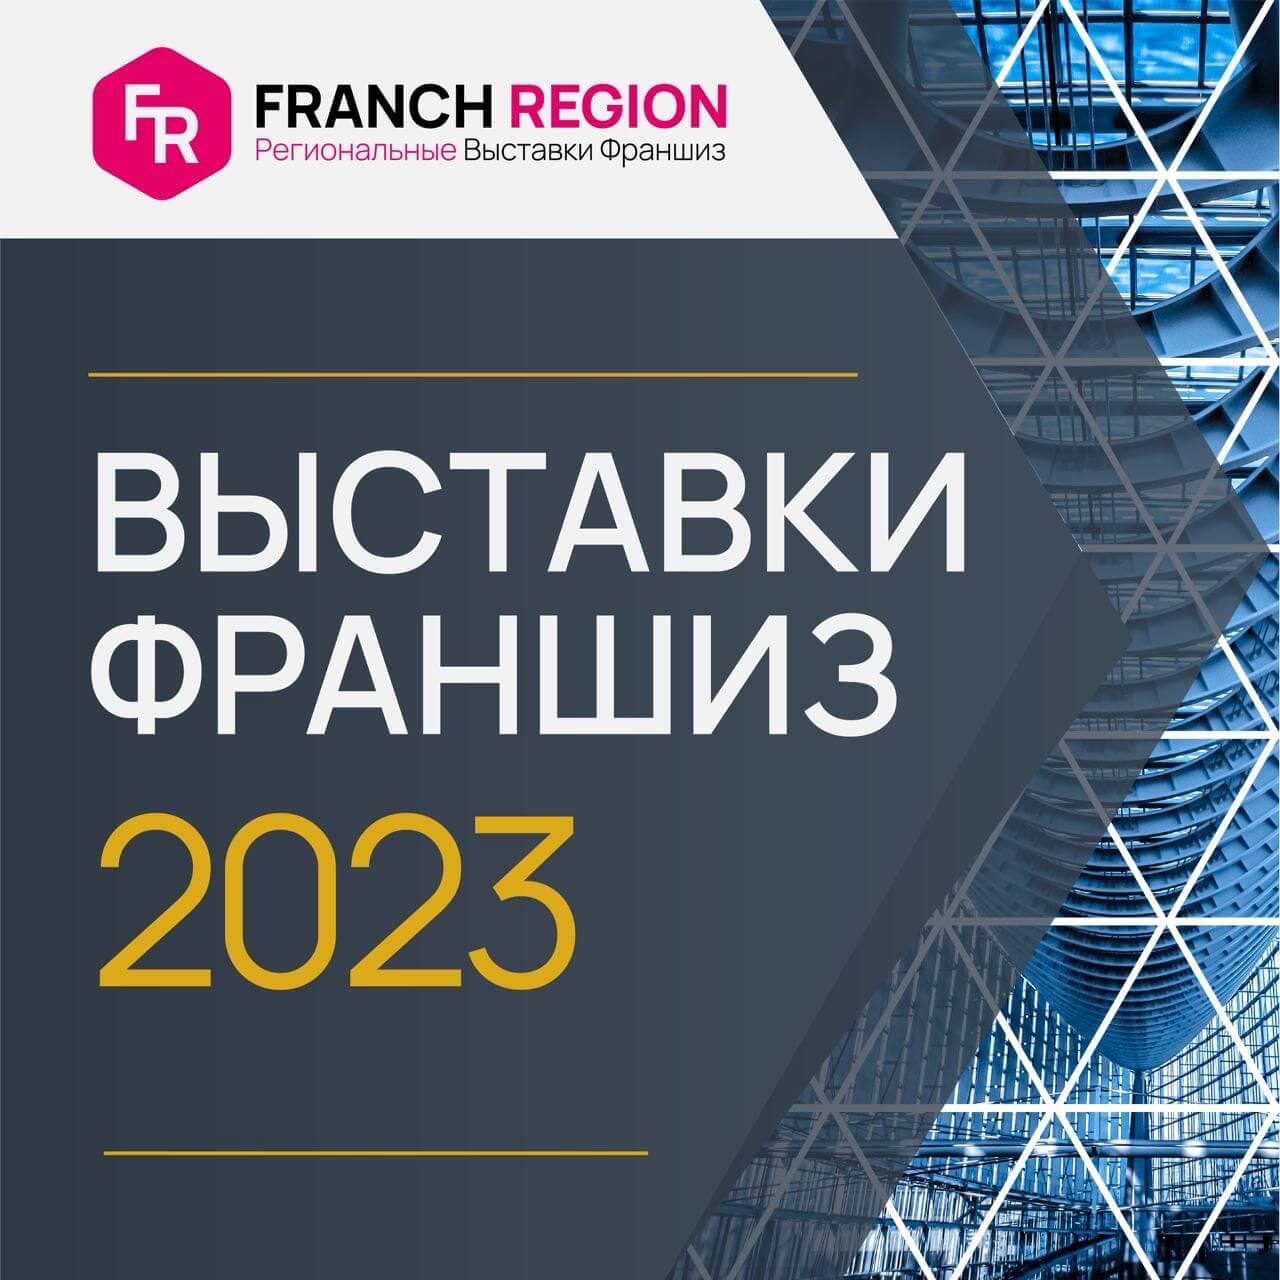 Franch Region рады сообщить о новых выставках франшиз в 2023 году!